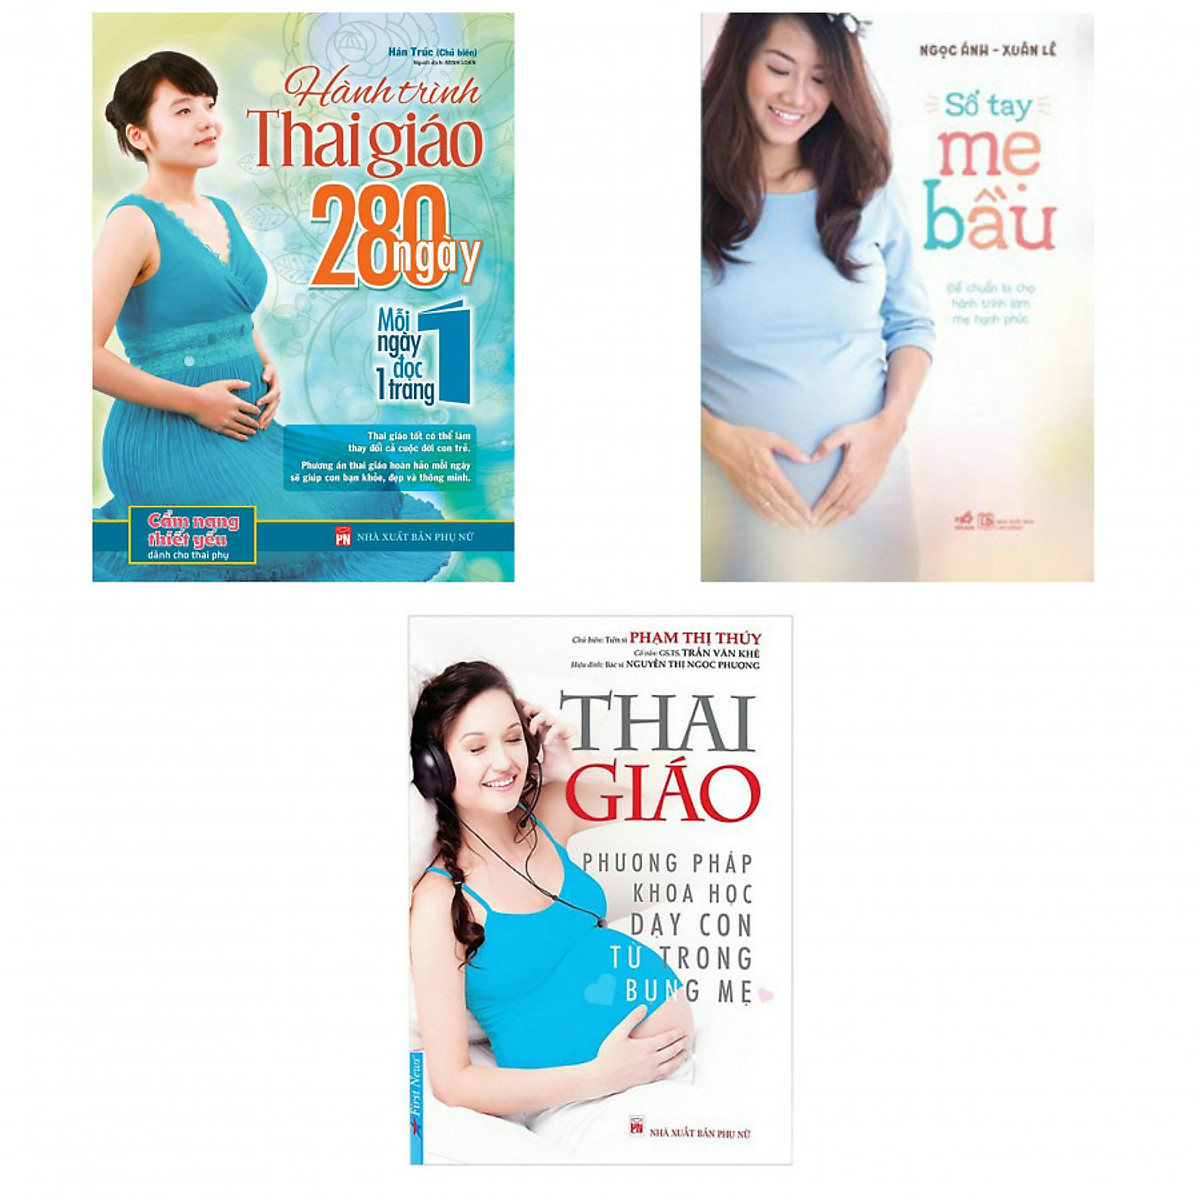 Combo hành trình thai giáo 280 ngày +sổ tay mẹ bầu +thai giáo phương pháp khoa học dạy con từ trong bụng mẹ(bản đặc biệt tặng kèm bookmark)